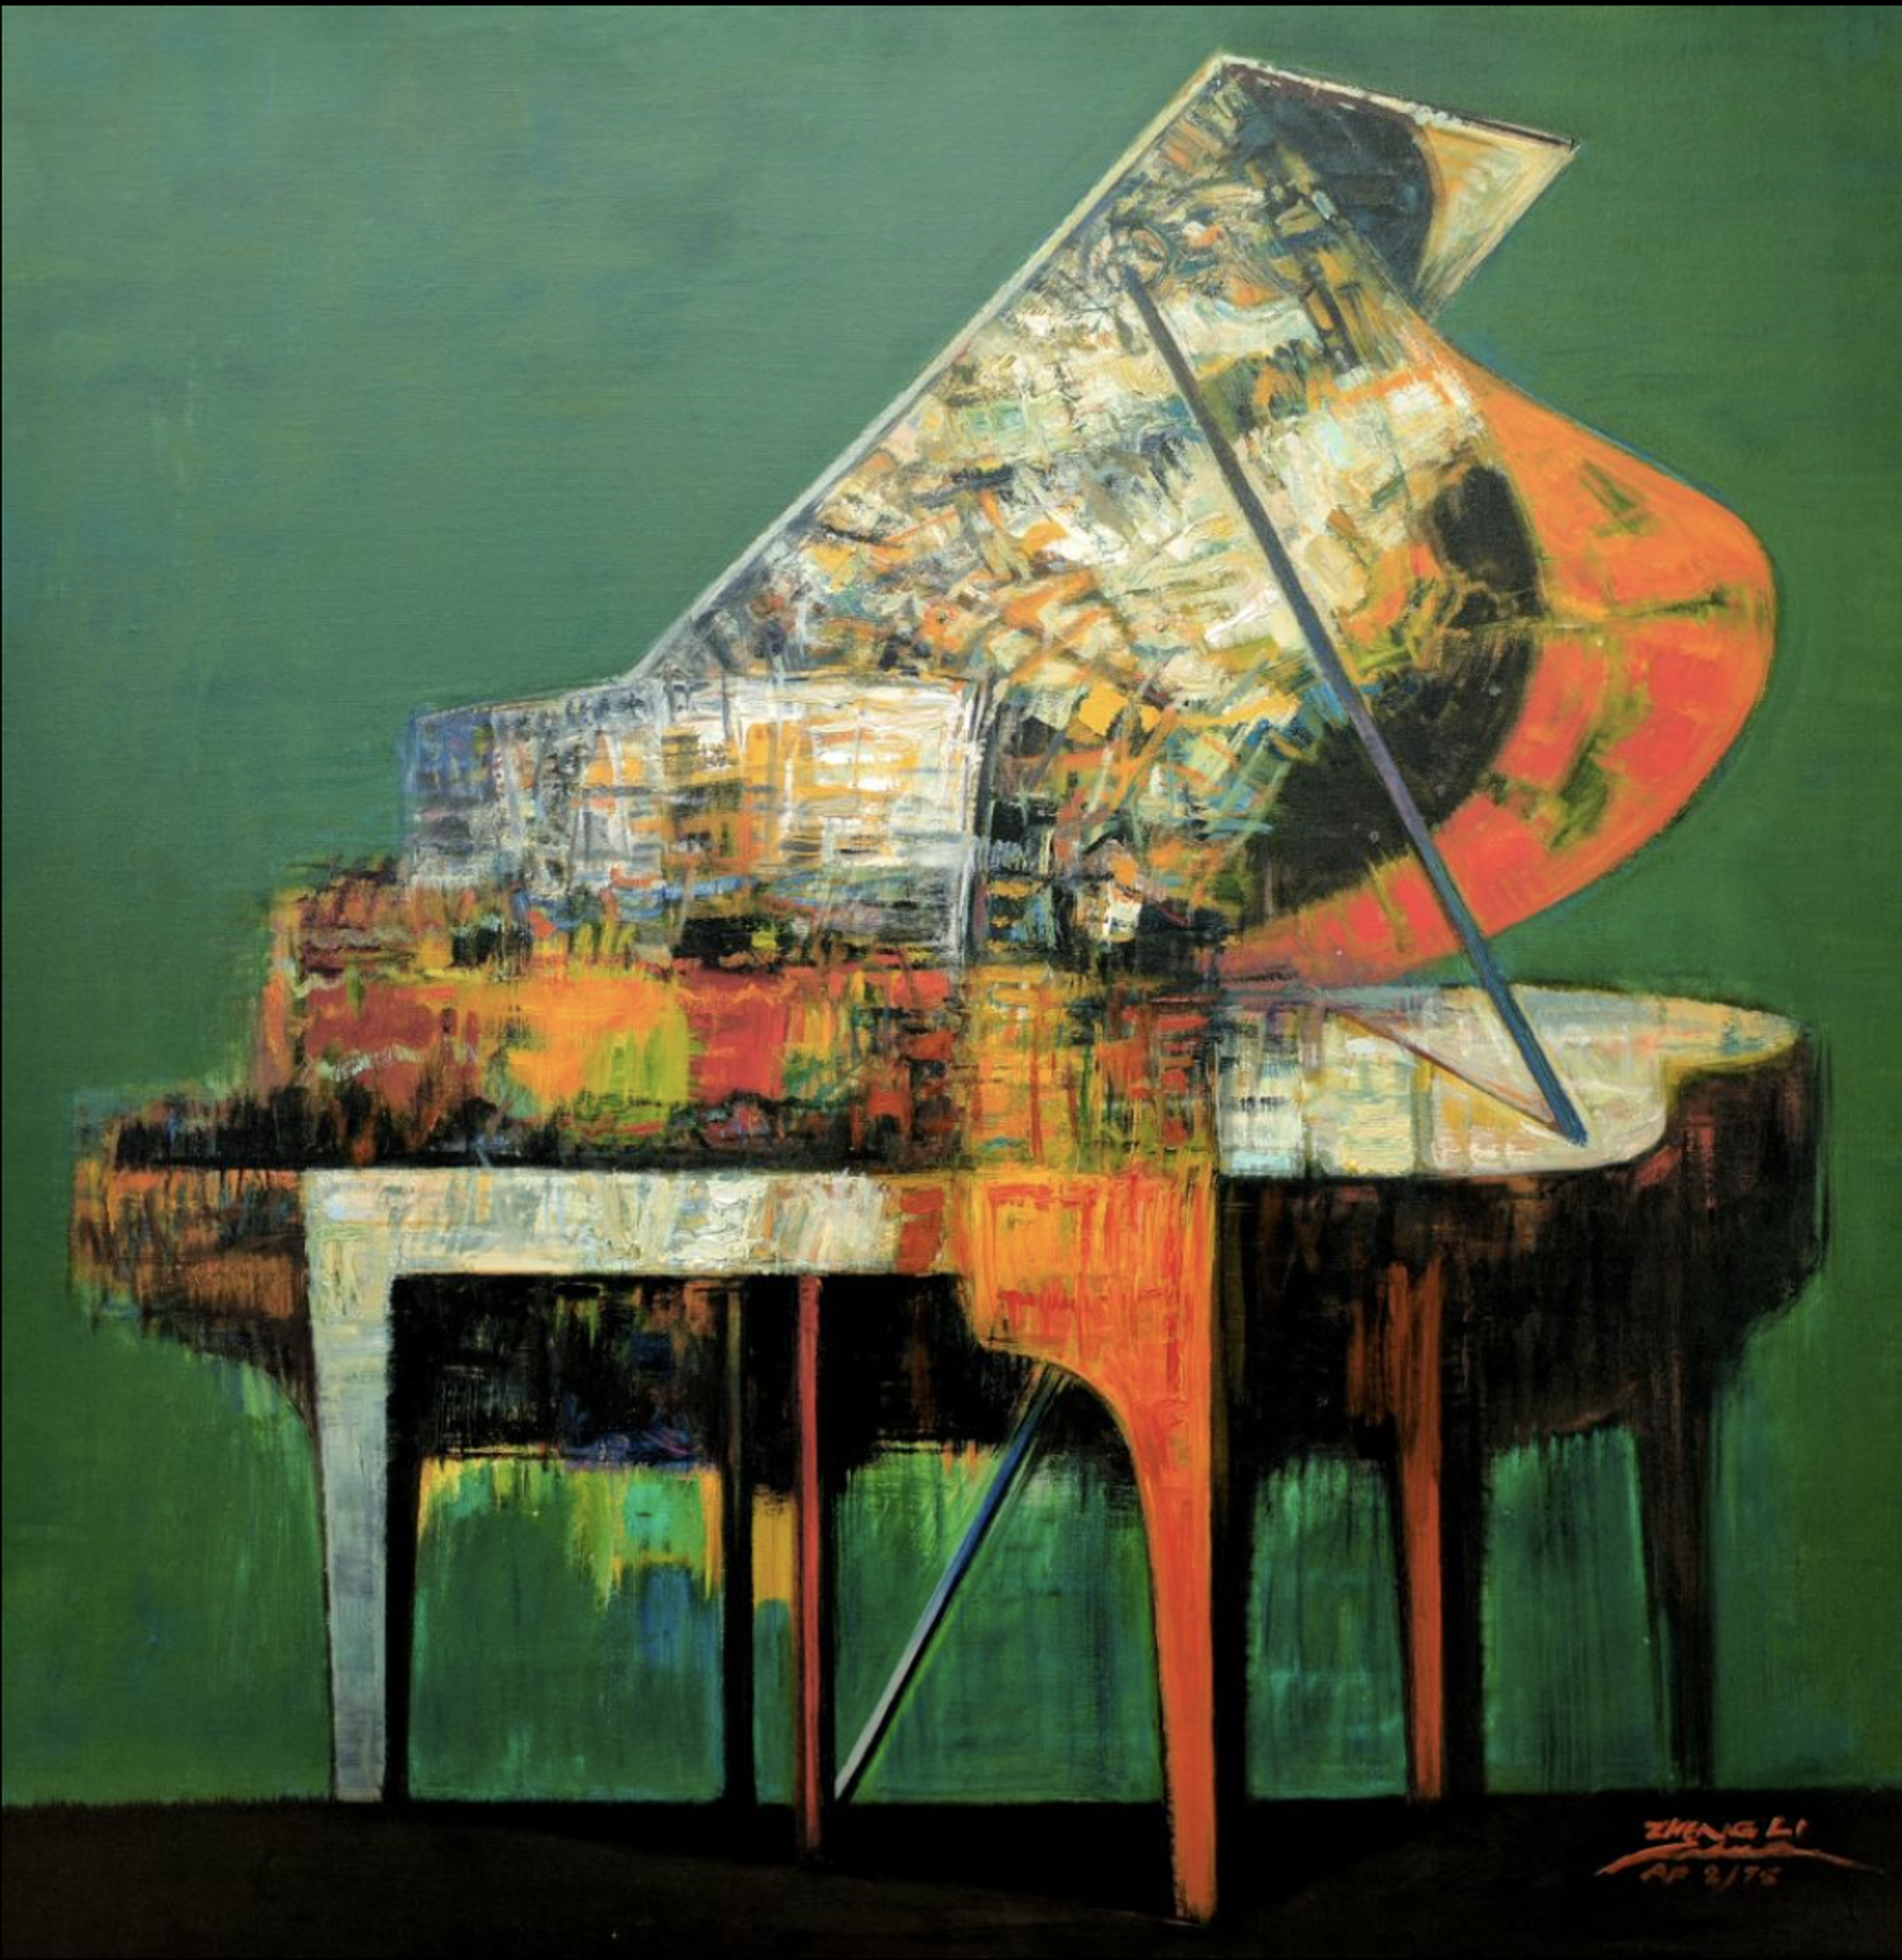 Piano Green by ZHENG LI